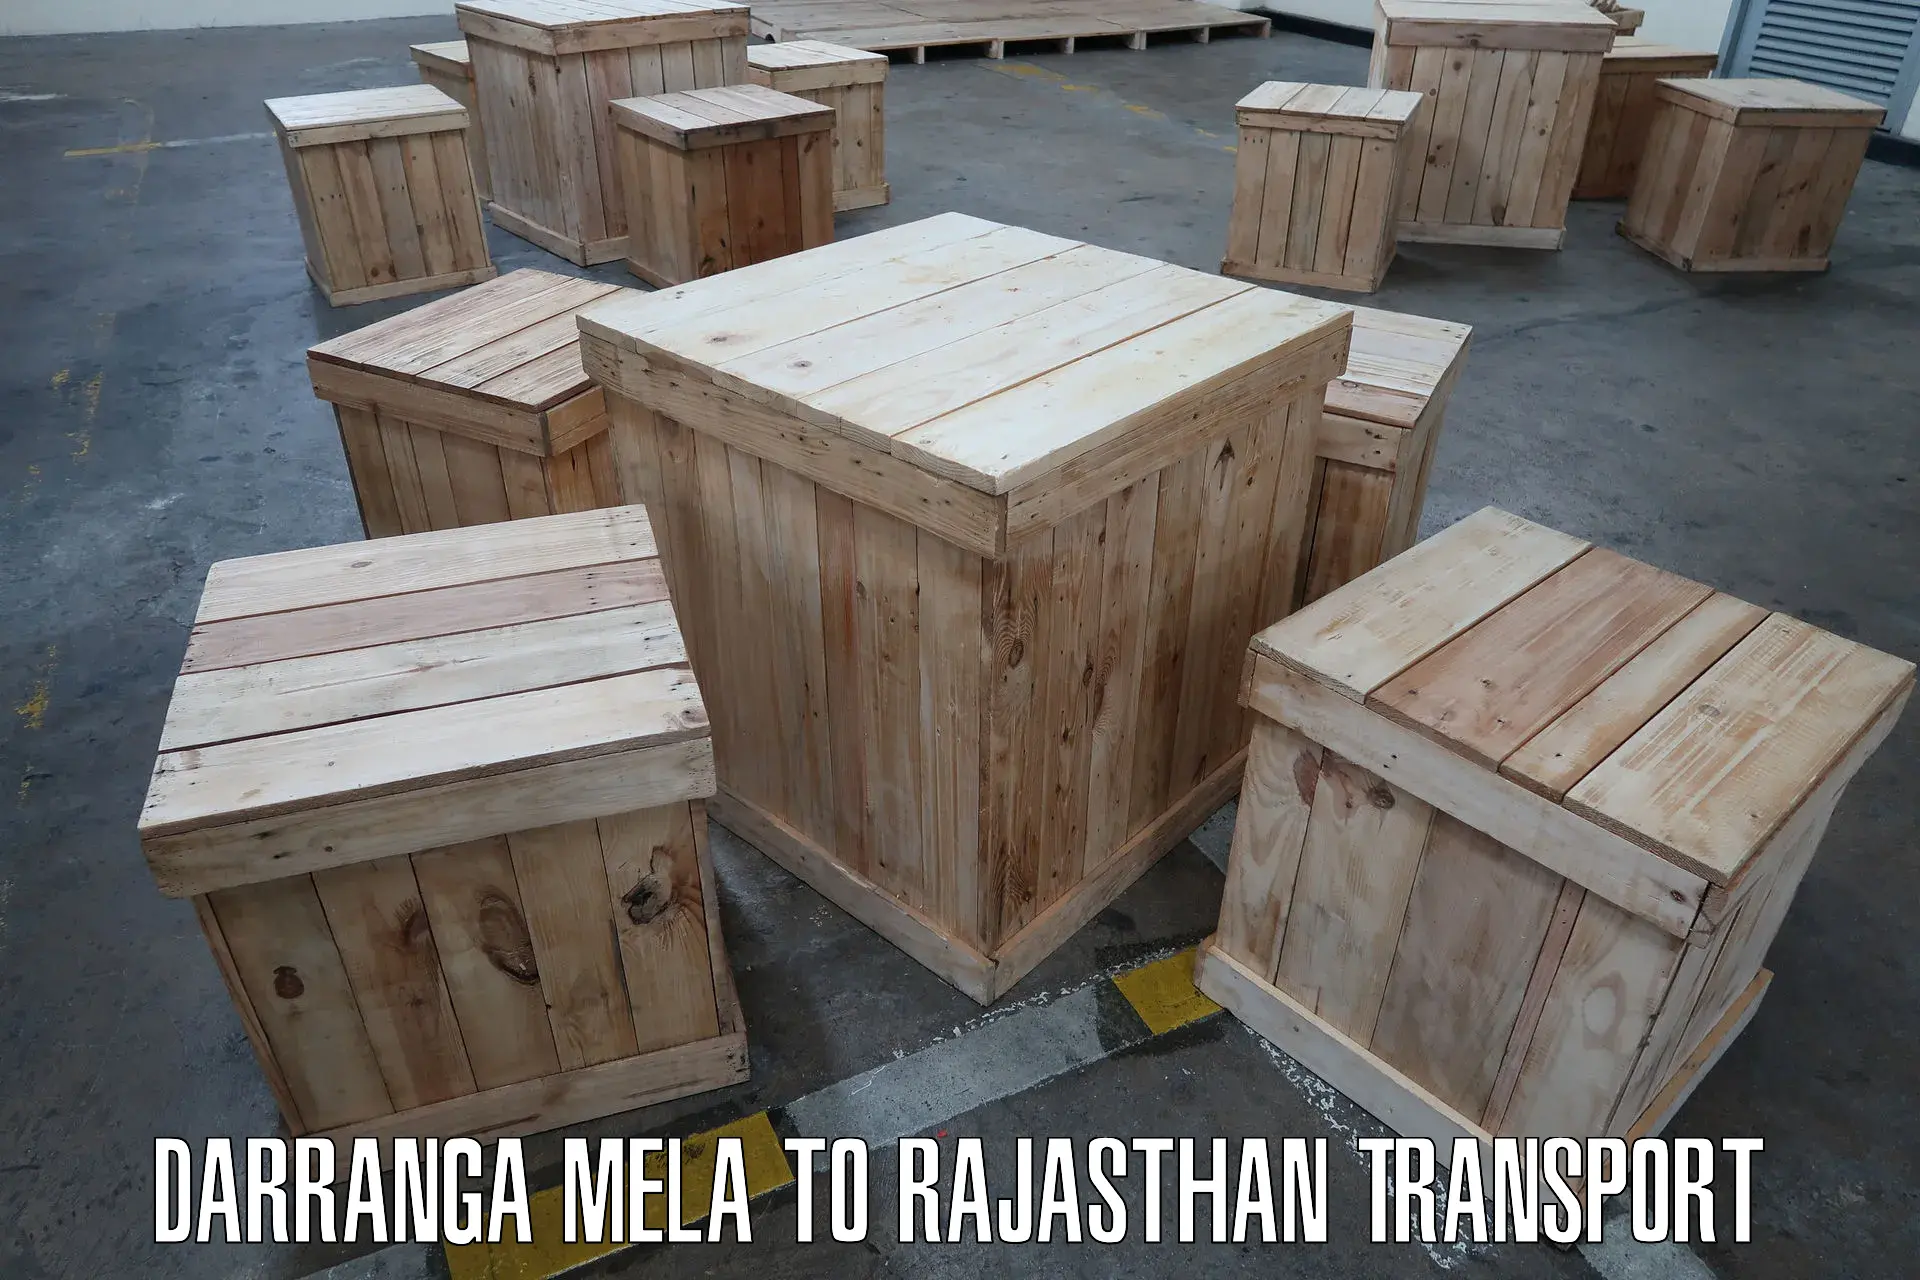 Commercial transport service Darranga Mela to Degana